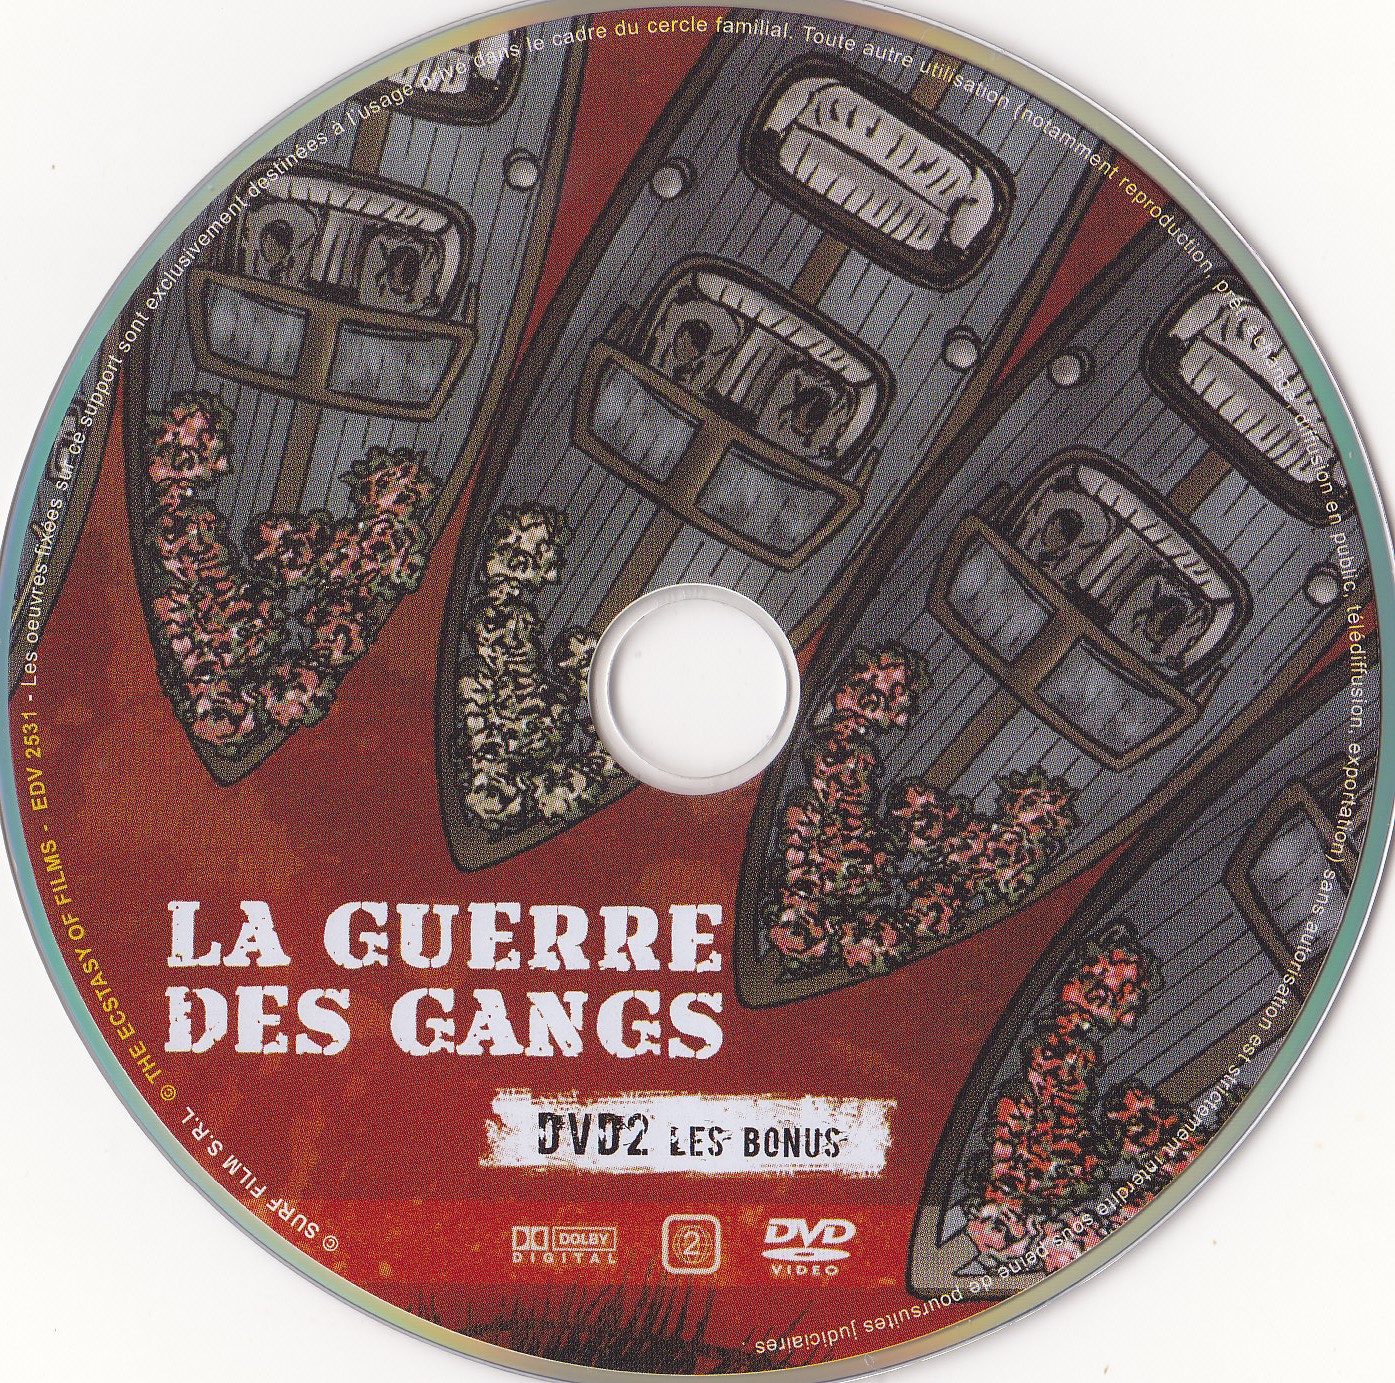 La Guerre des Gangs DISC 2